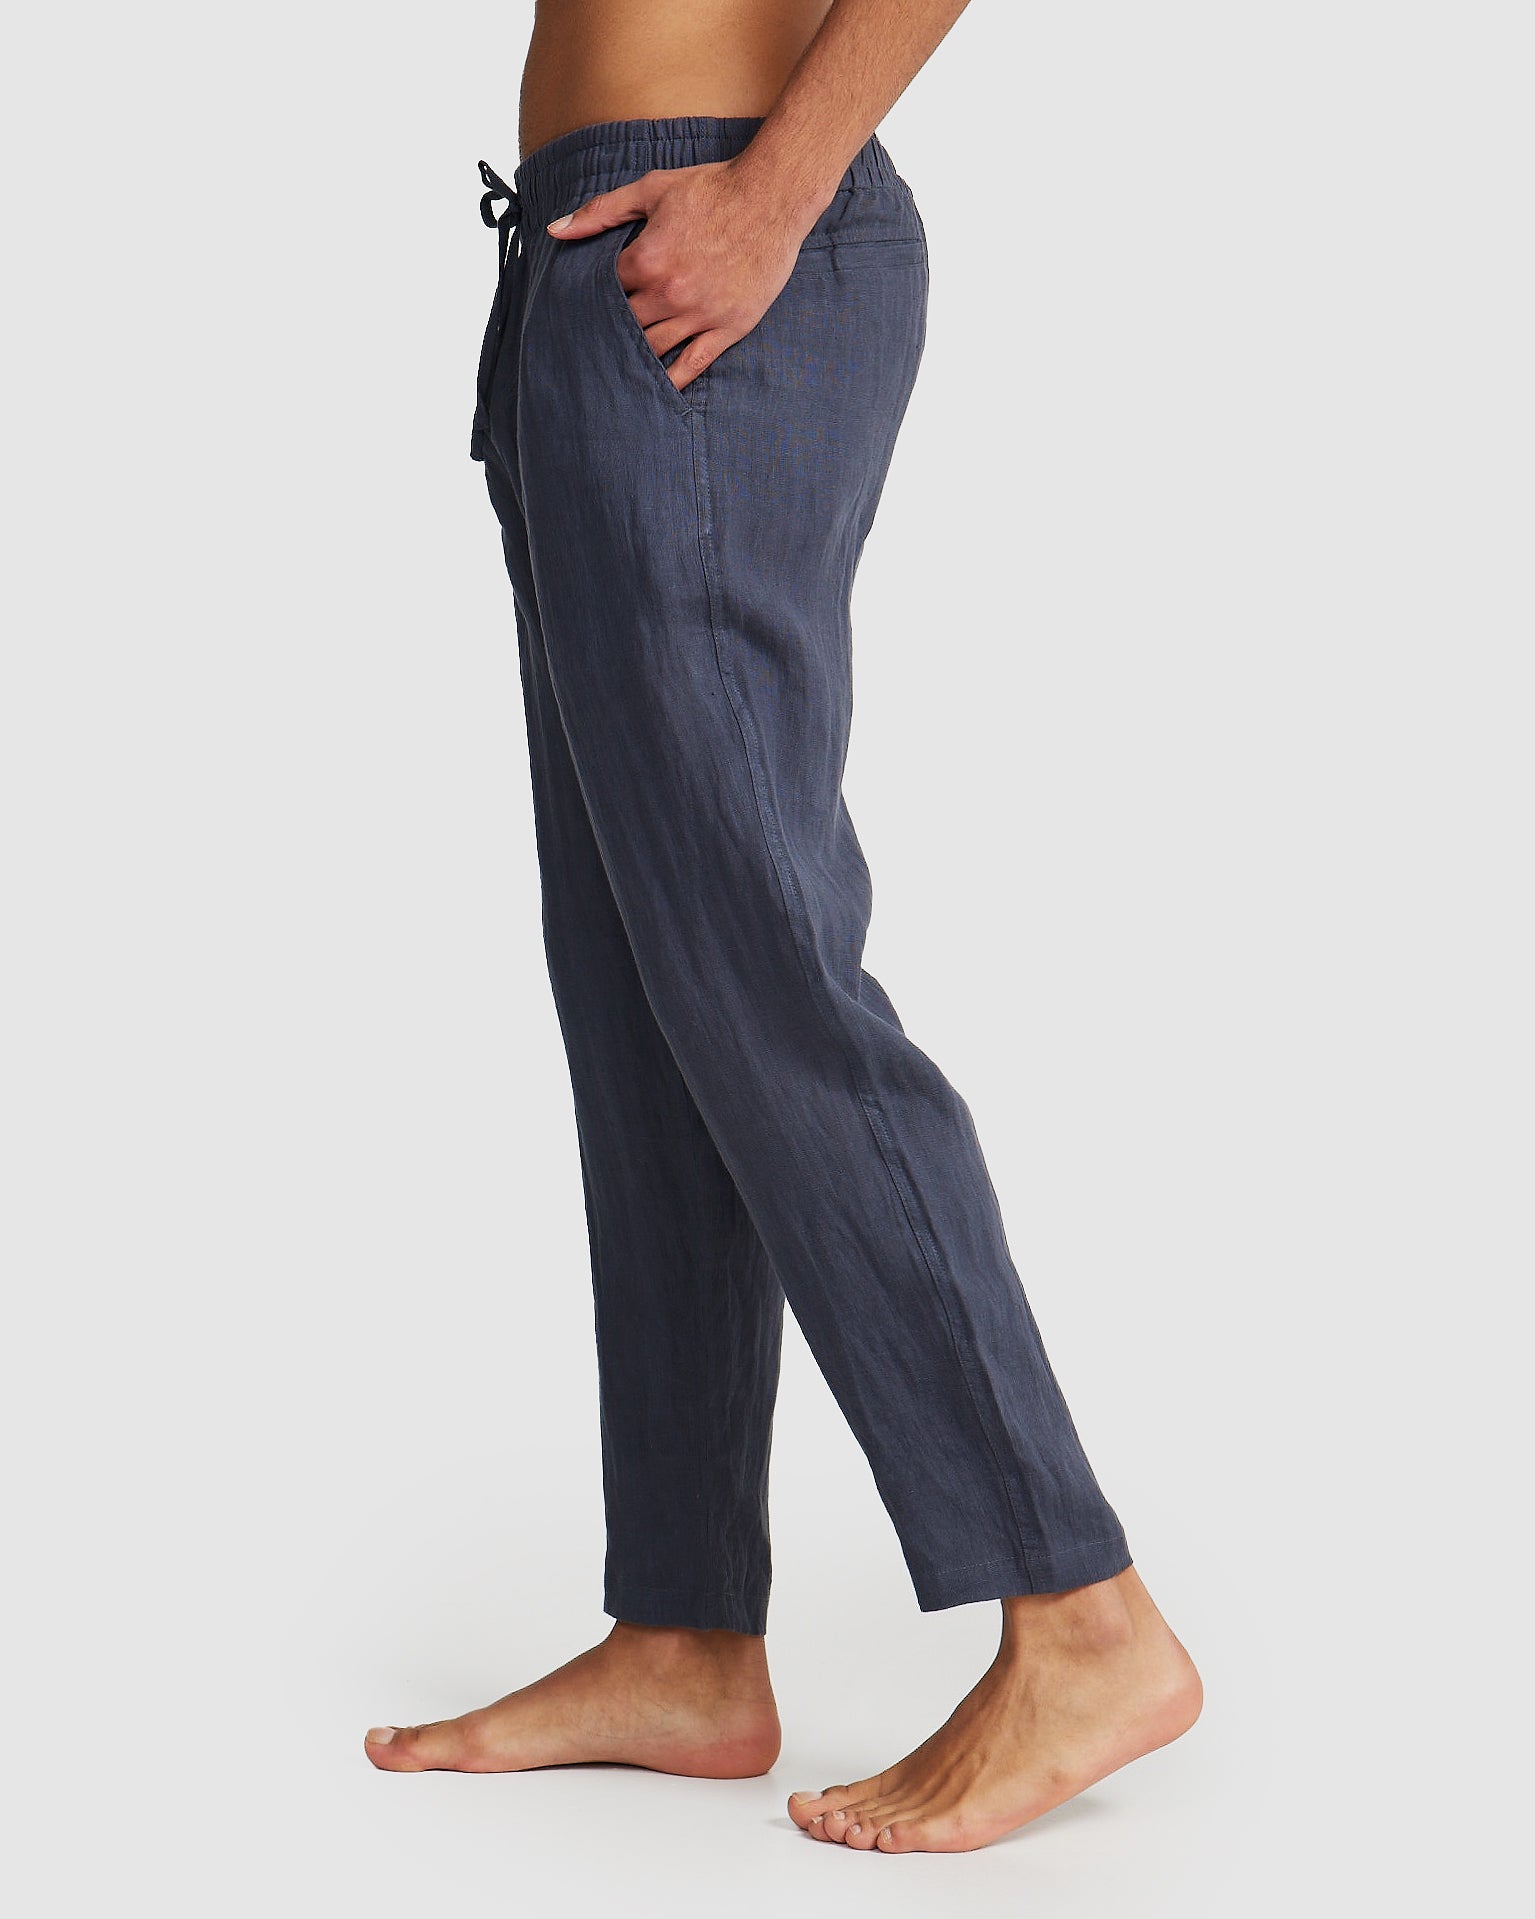 ortc Mens Linen Pants